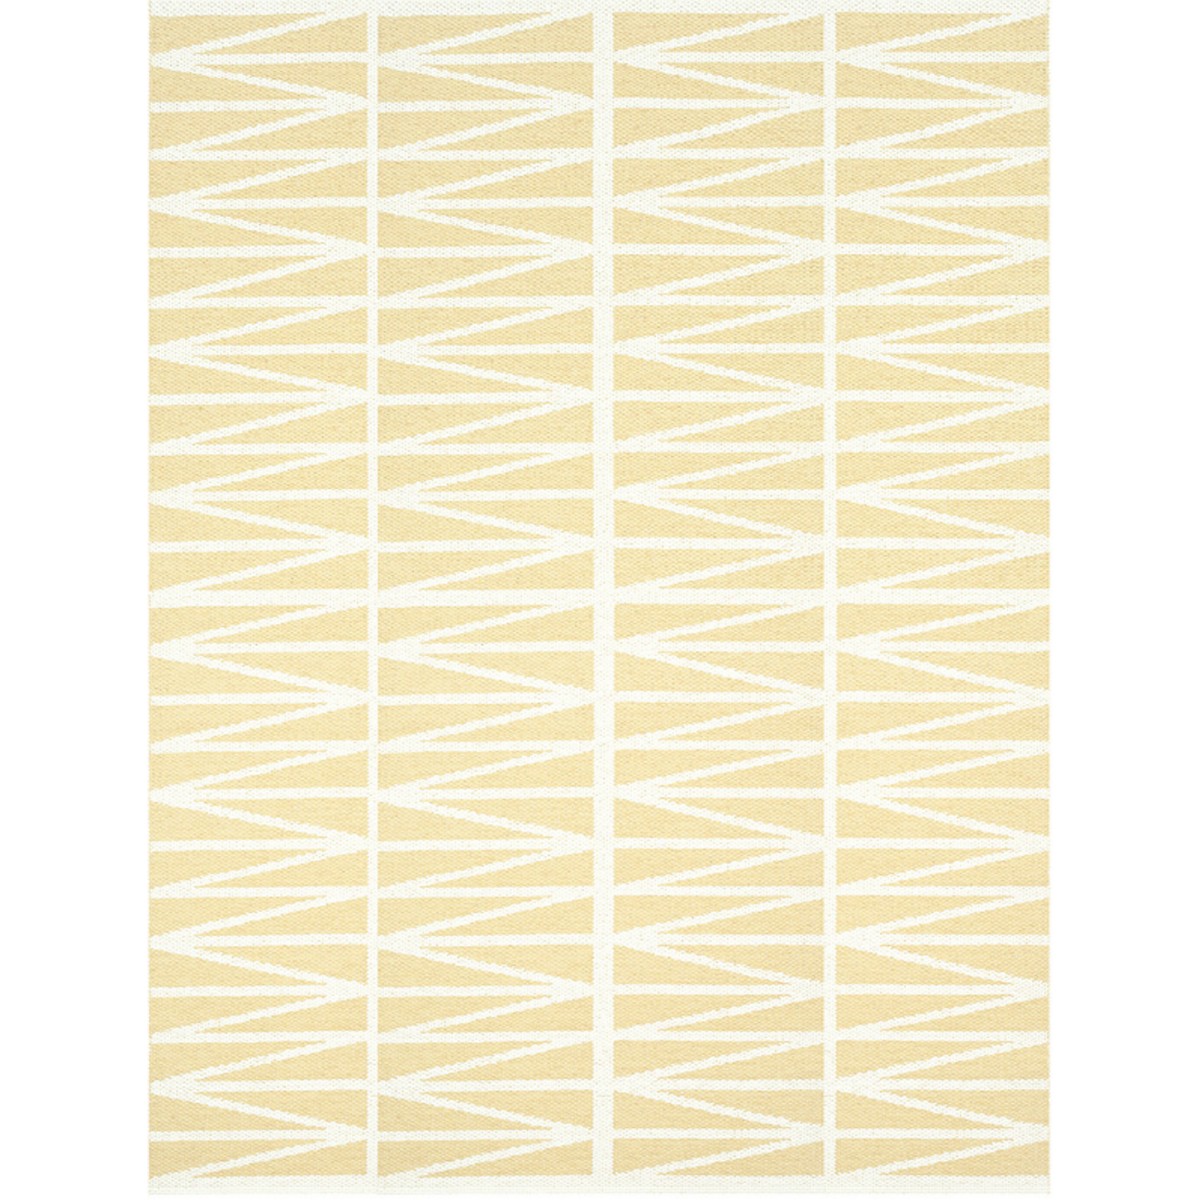 jaune clair - 150x200cm - Helmi - tapis plastique